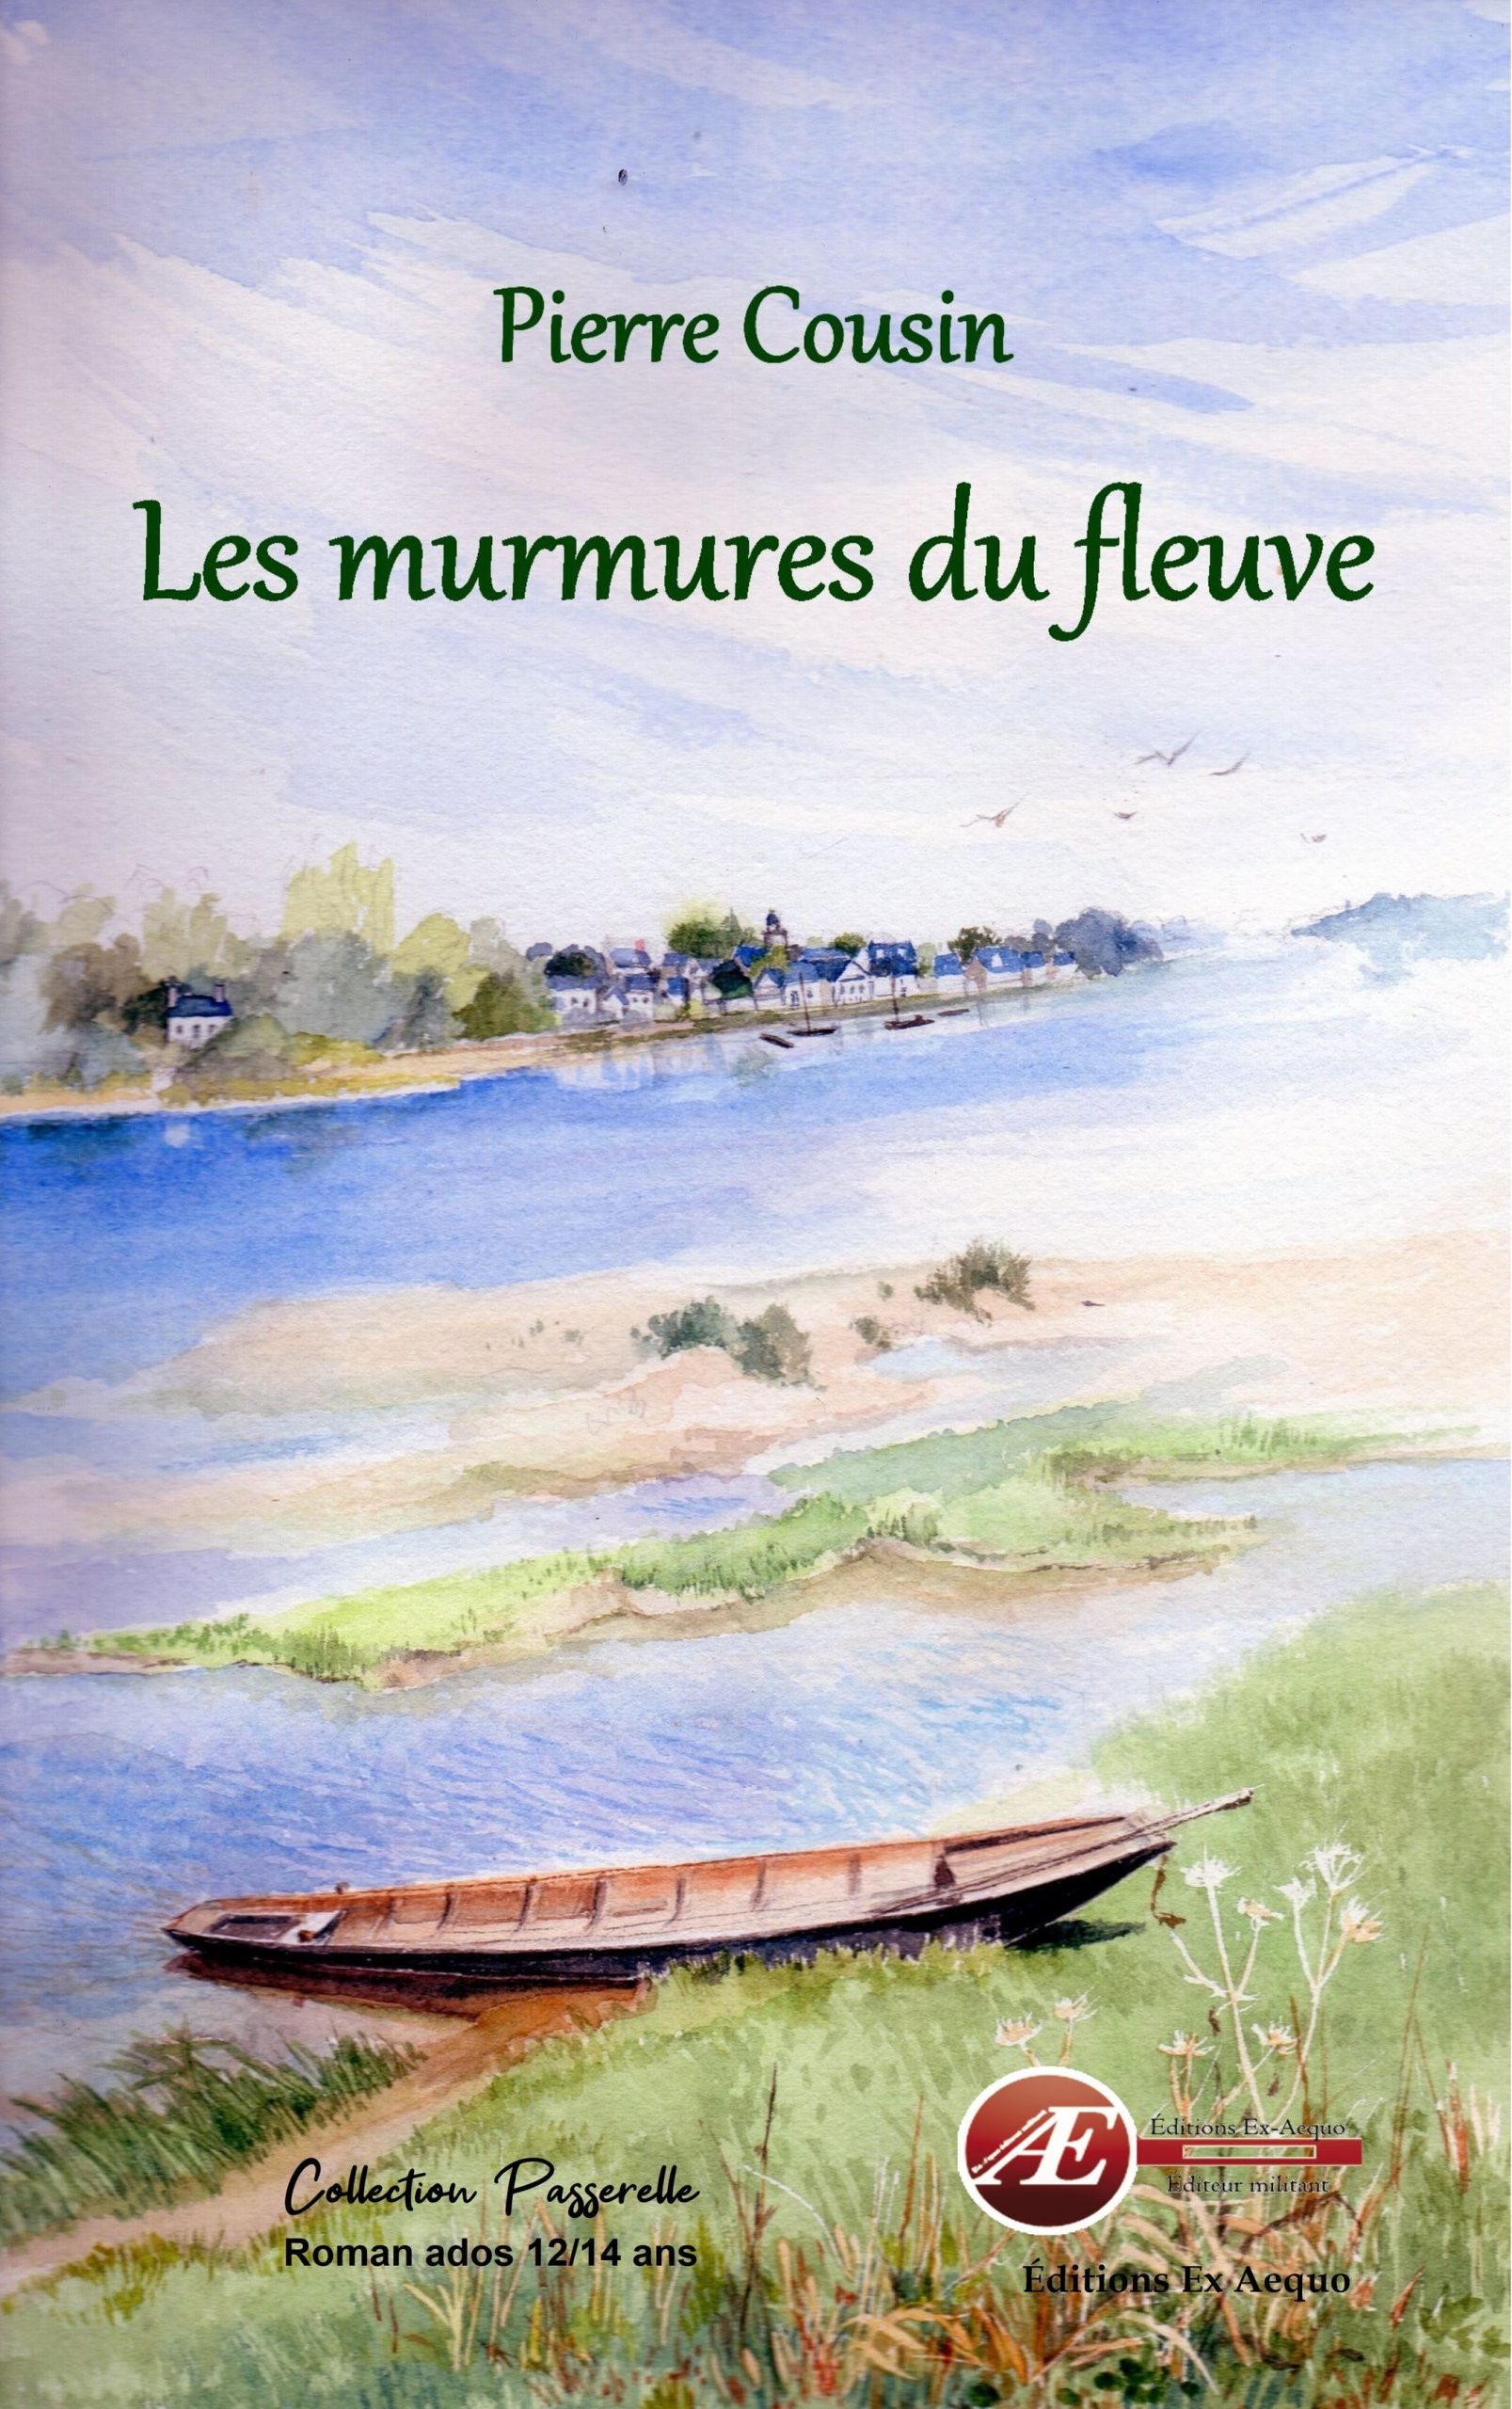 You are currently viewing Les murmures du fleuve, de Pierre Cousin